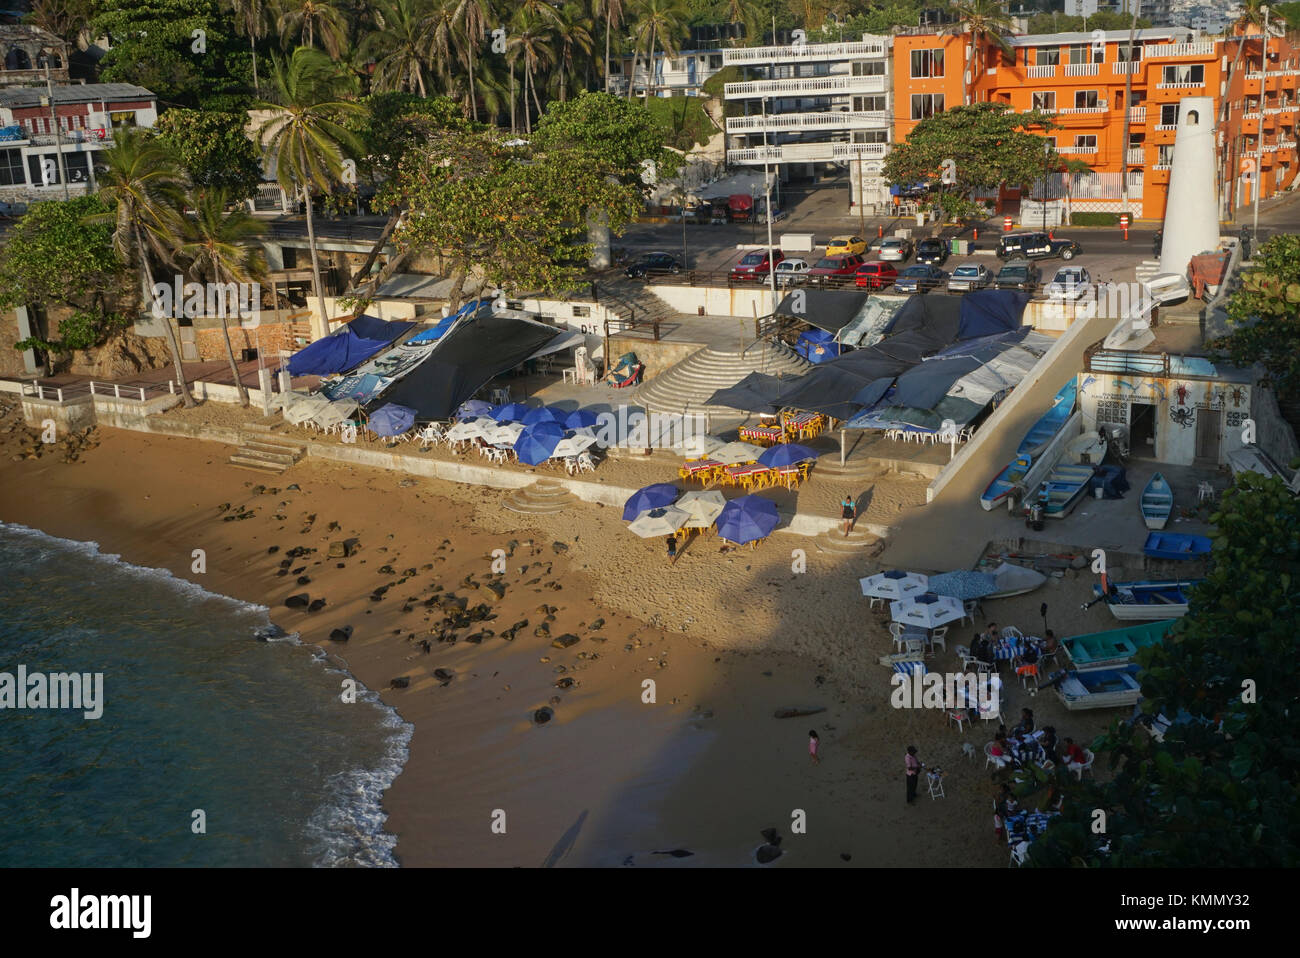 Playa La Angosta (La Angosta Beach) in Acapulco, Mexico Stock Photo